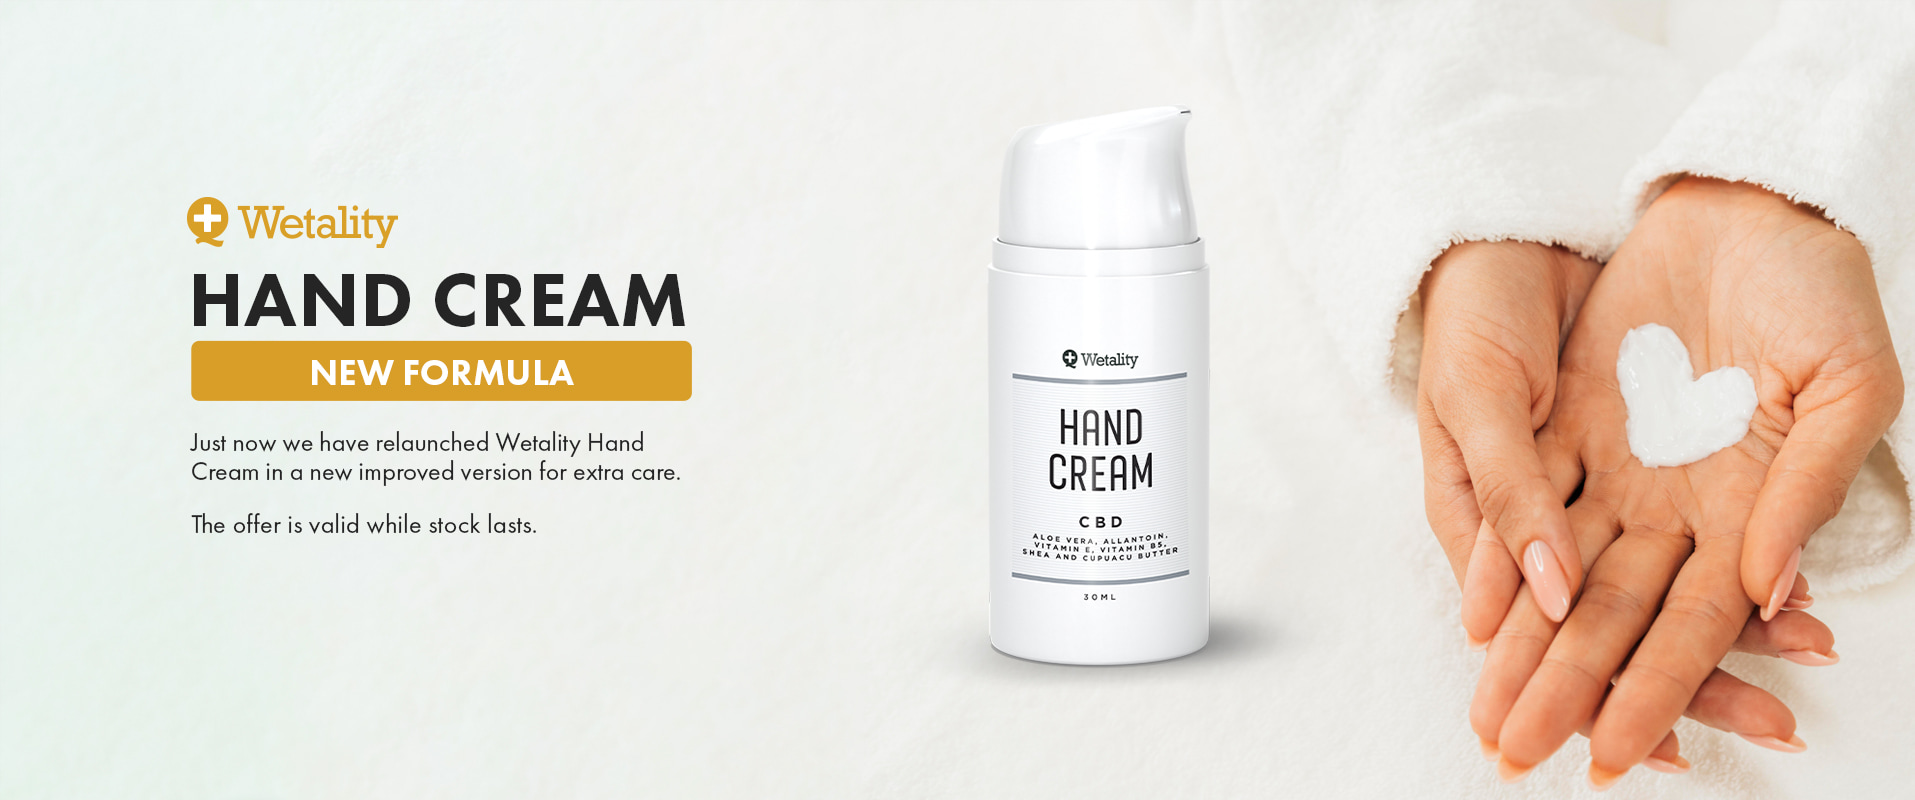 Wetality Hand Cream